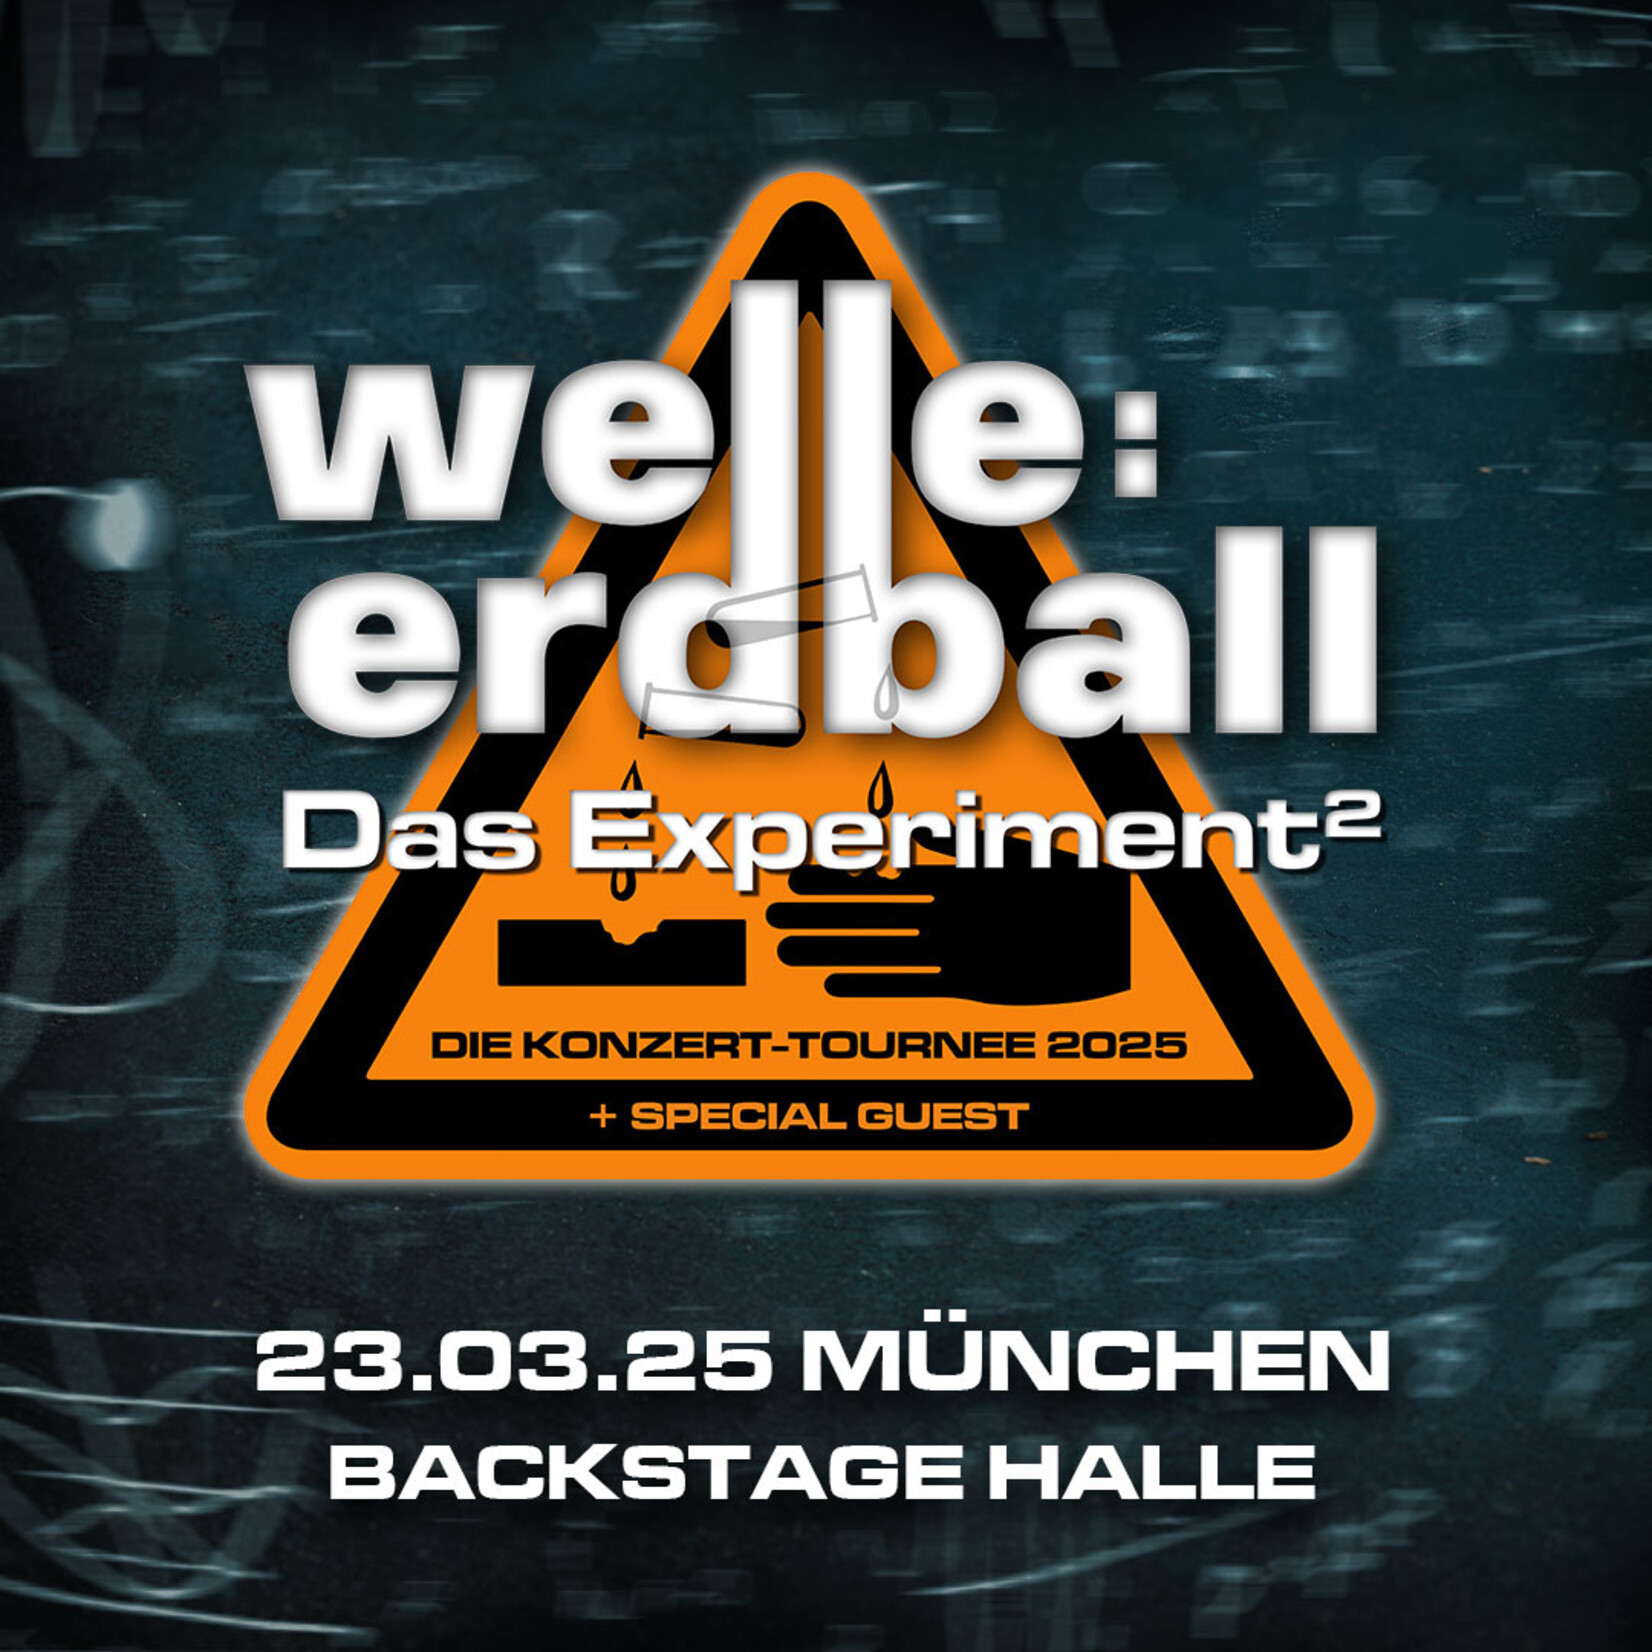 23.03.2025 - MUNICH - WELLE:ERDBALL - DAS EXPERIMENT²